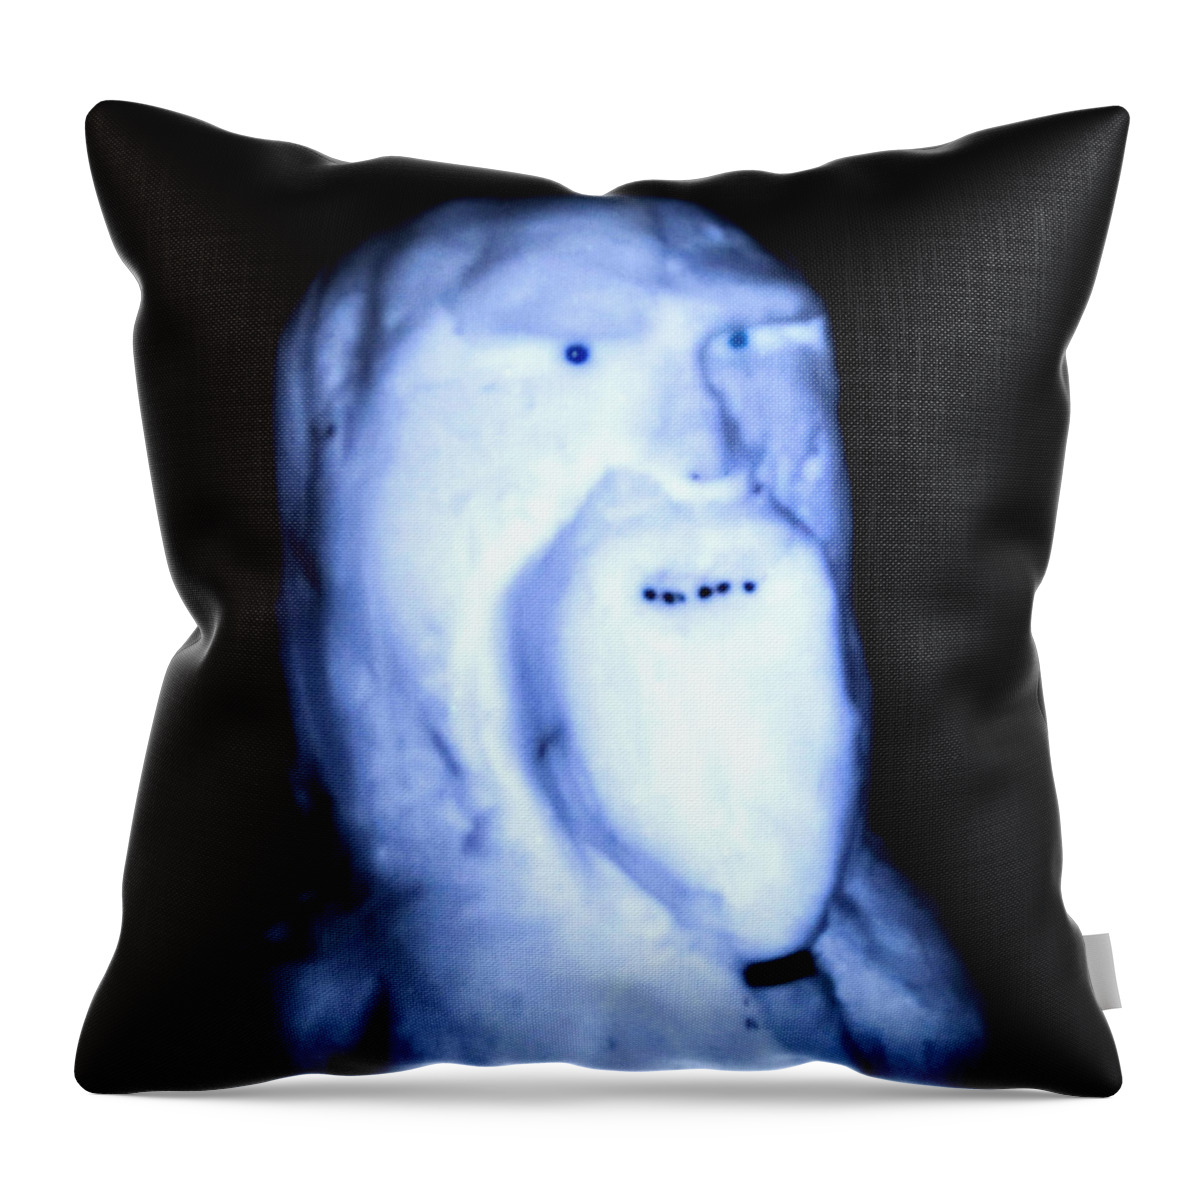  Throw Pillow featuring the digital art Alien Snowman by Digital Art Cafe